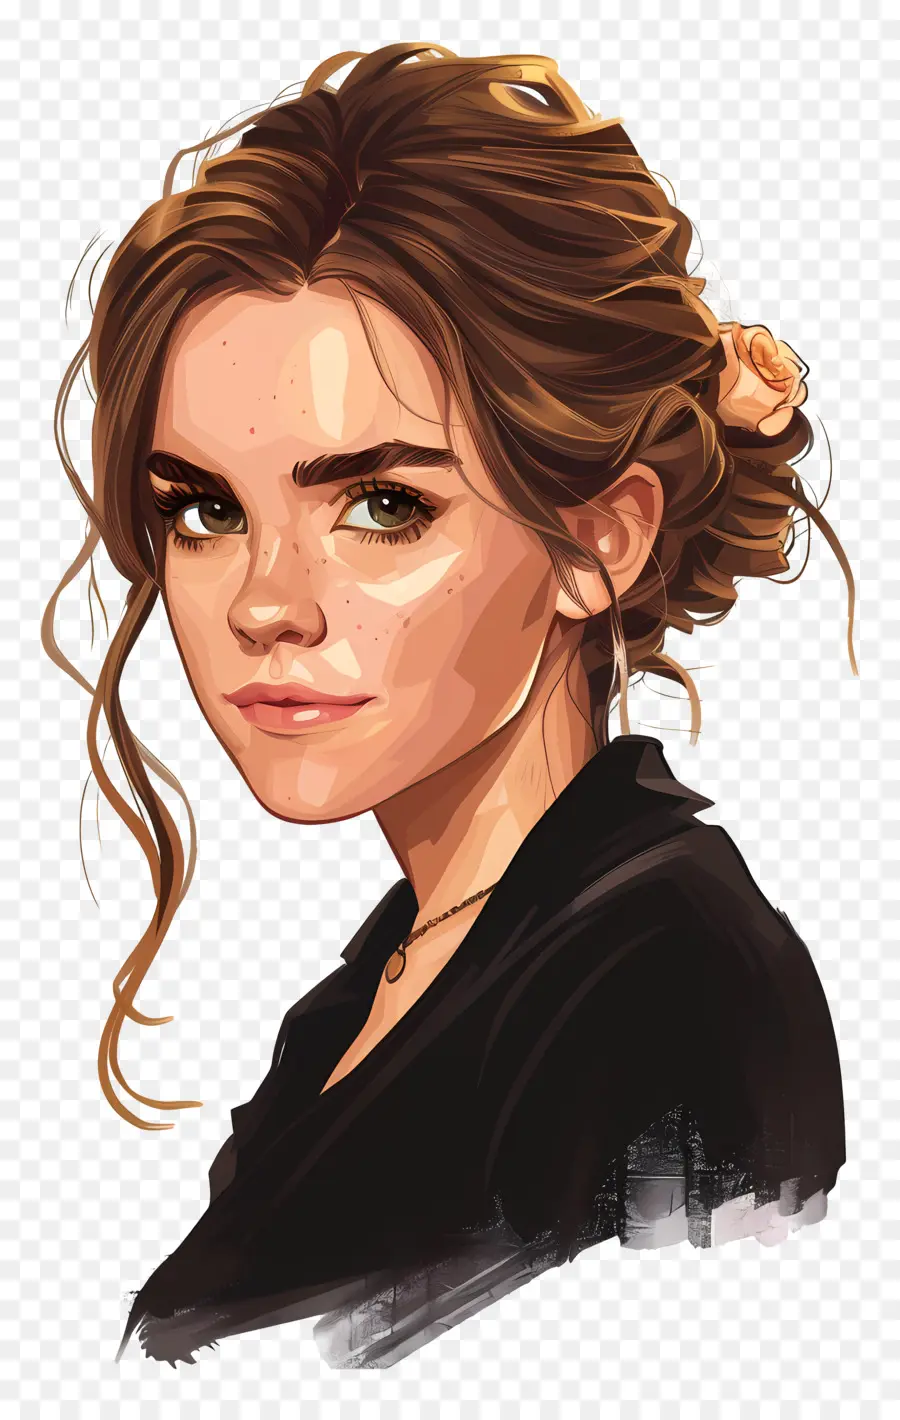 Emma Watson Digital Art Woman Capelli marroni Maglie nera - Dipinto digitale di donna con capelli castani